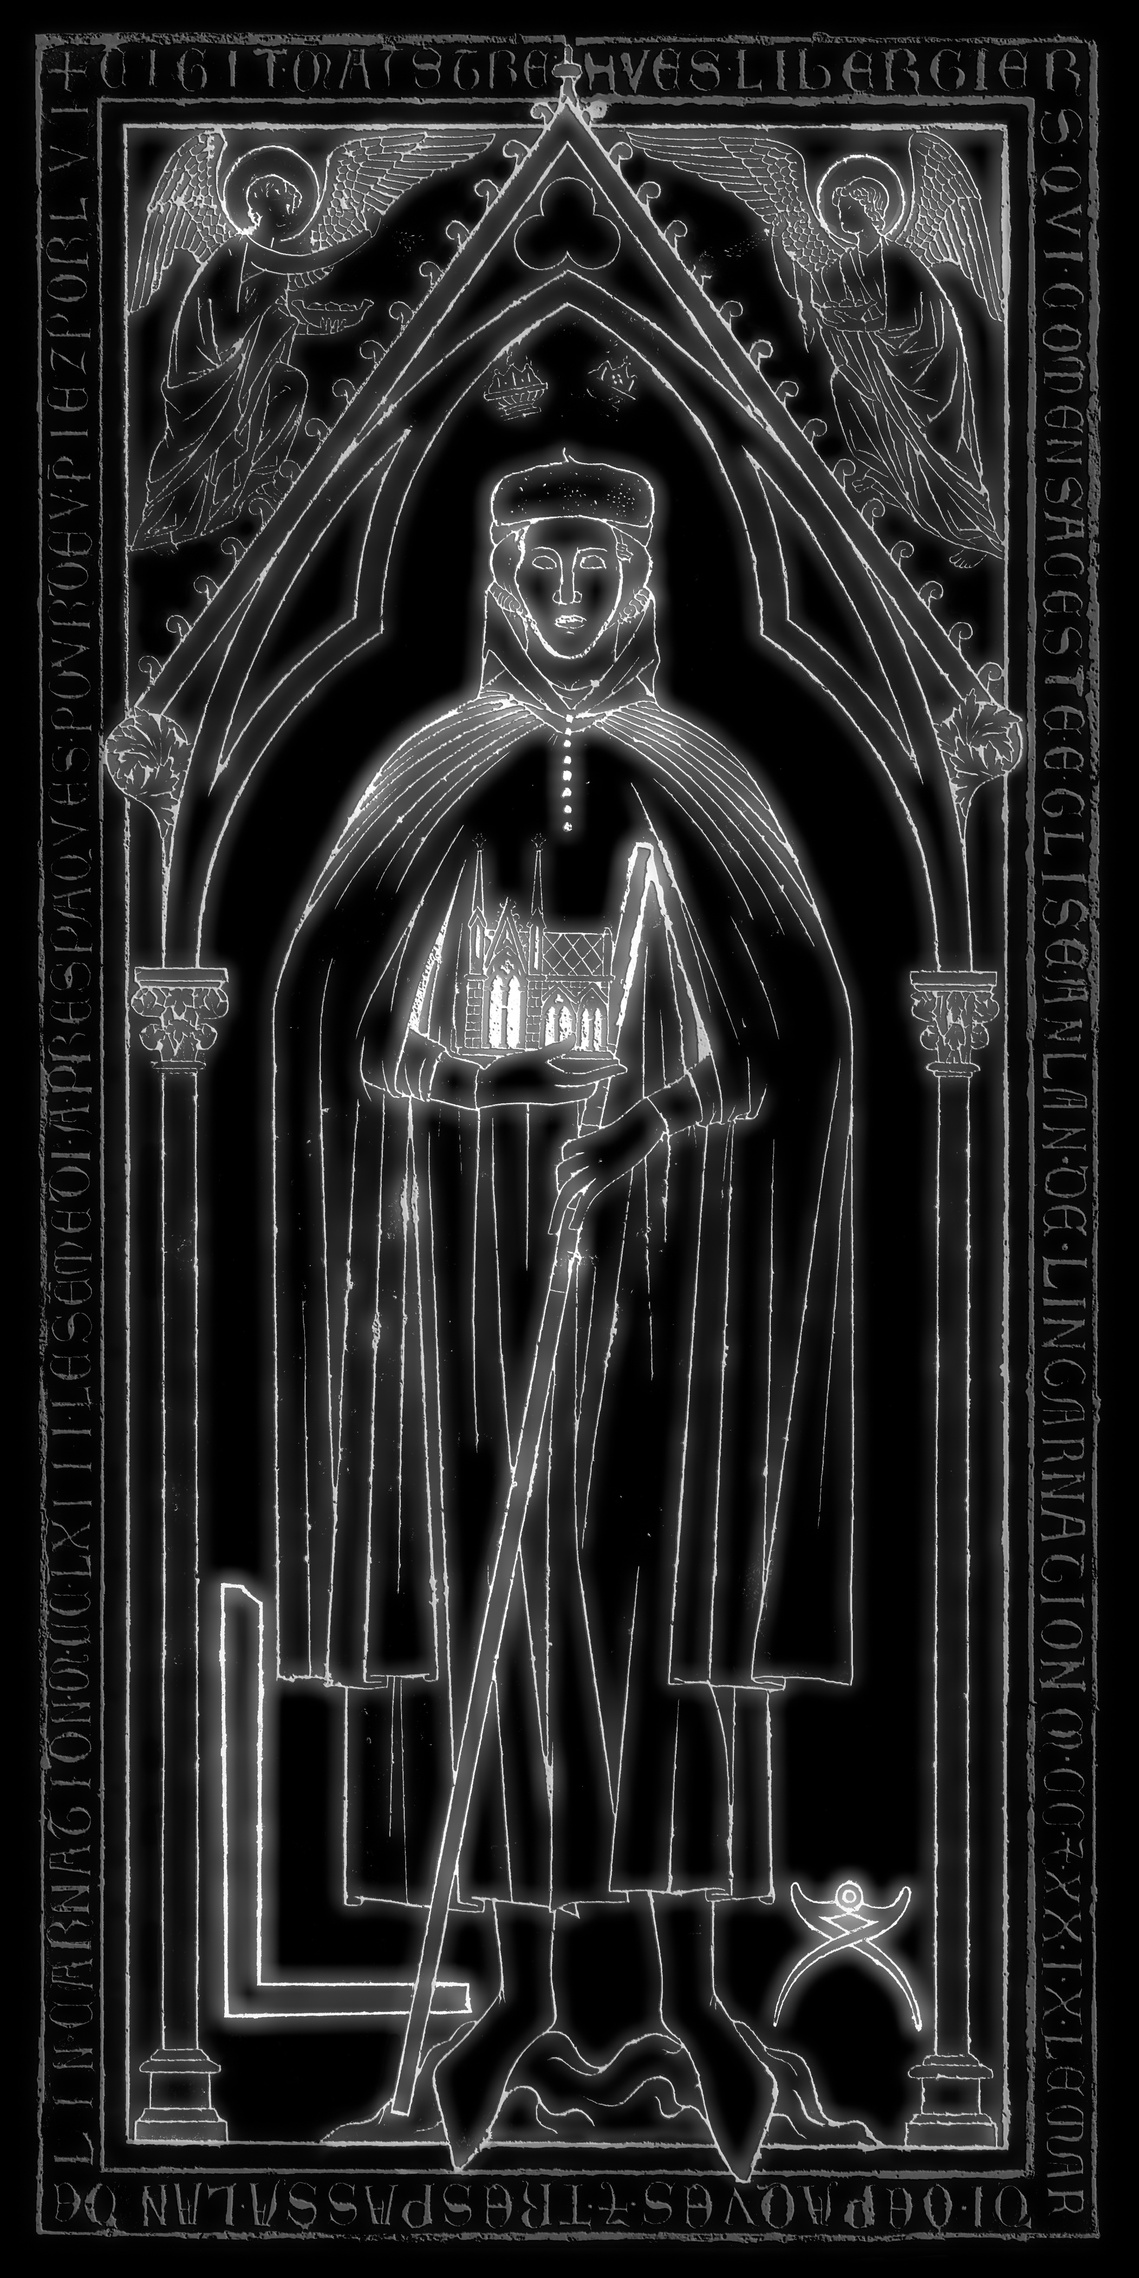 Tombe de Libergier, tracé de plomb, reconstitué et mis en exergue, en blanc sur fond noir. Dans la cathédrale de Reims.